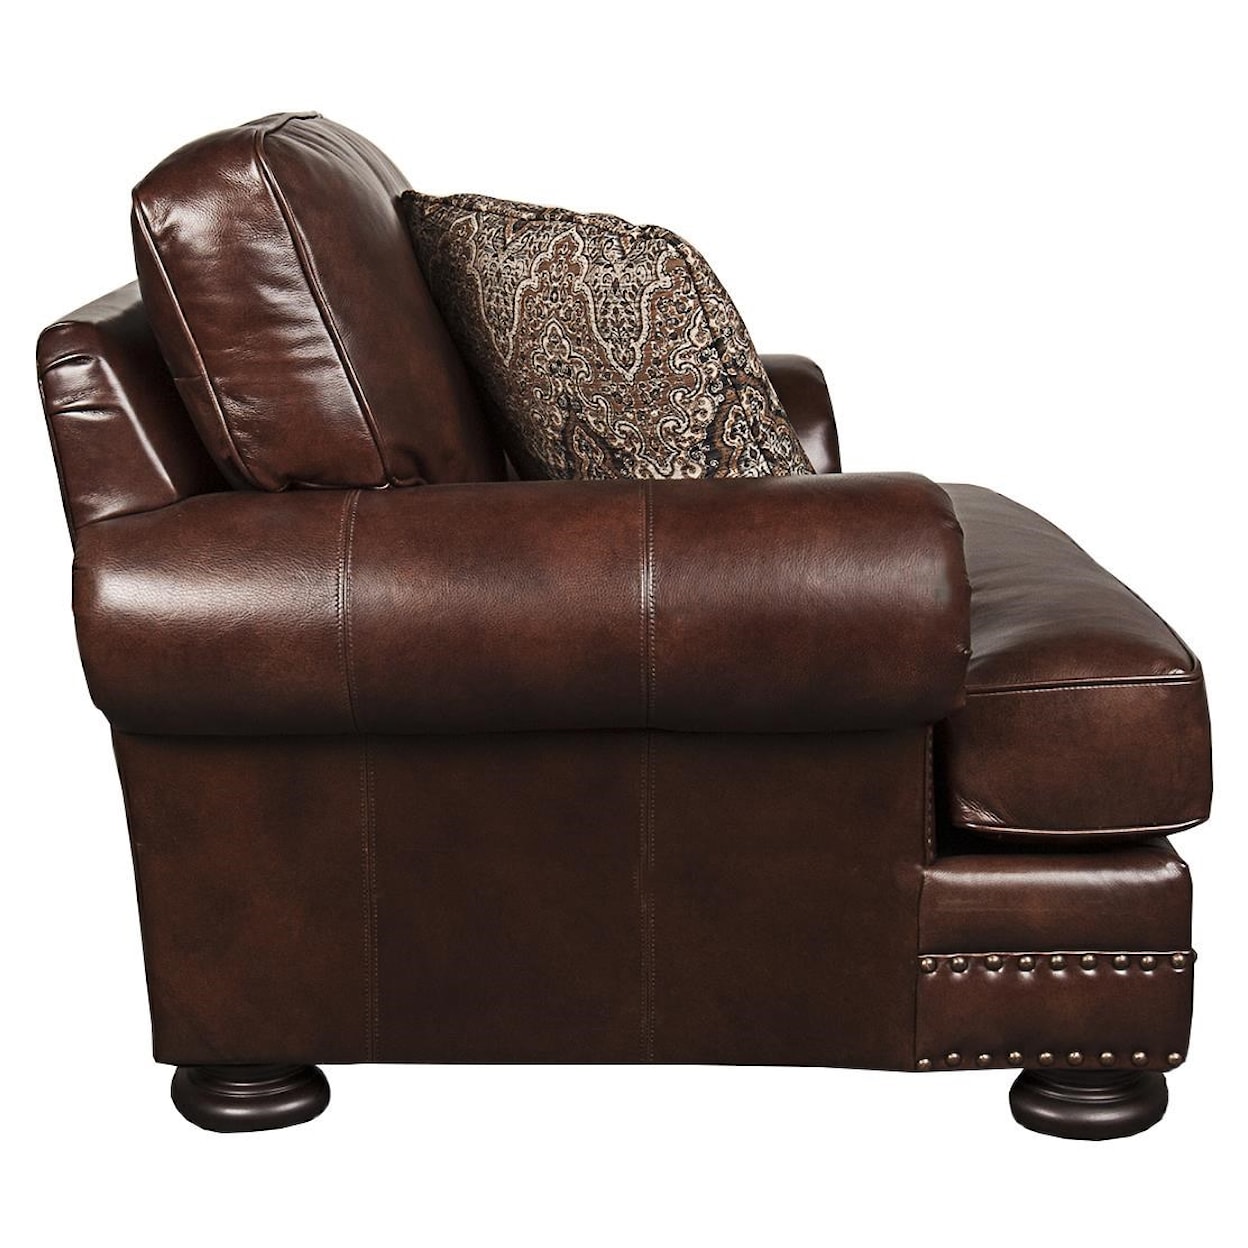 Bernhardt Foster  Foster 100% Leather Chair